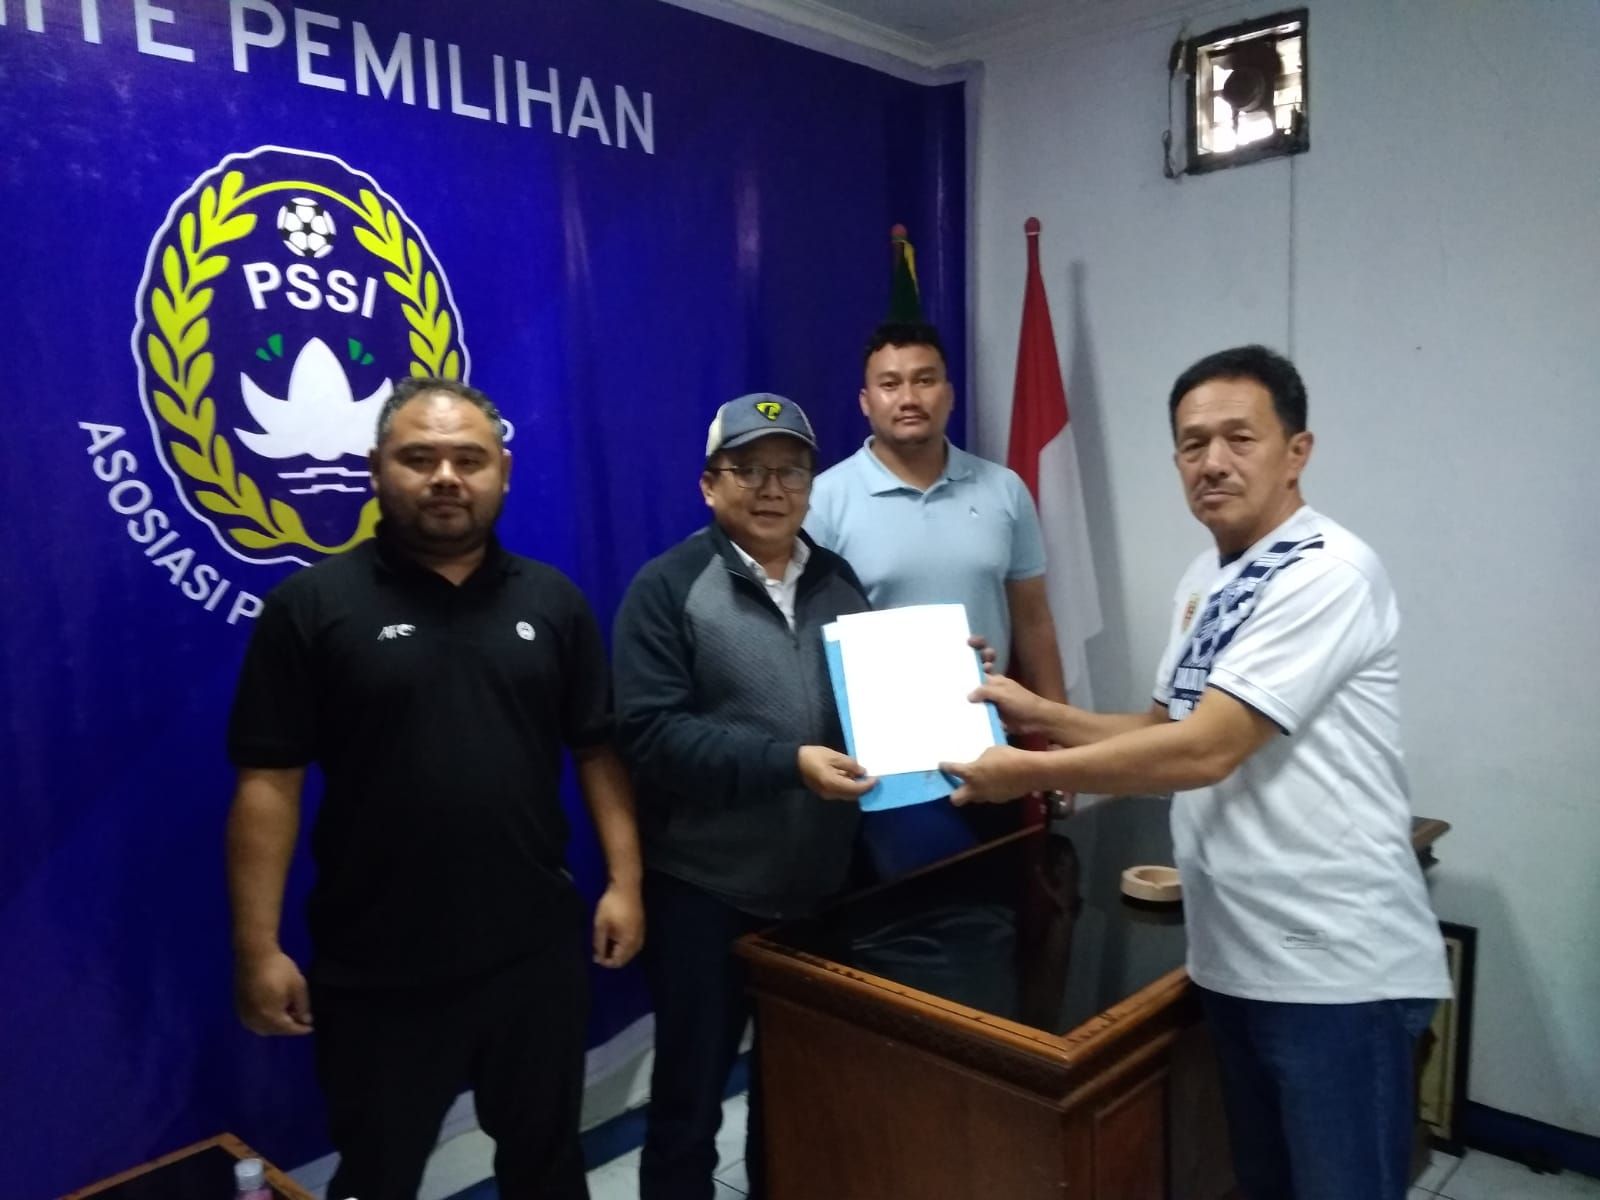 Yoko Anggasurya Resmi Mendaftarkan Diri Menjadi Calon Ketua Umum PSSI Kota Bandung, KLB Digelar 27 Maret 2022